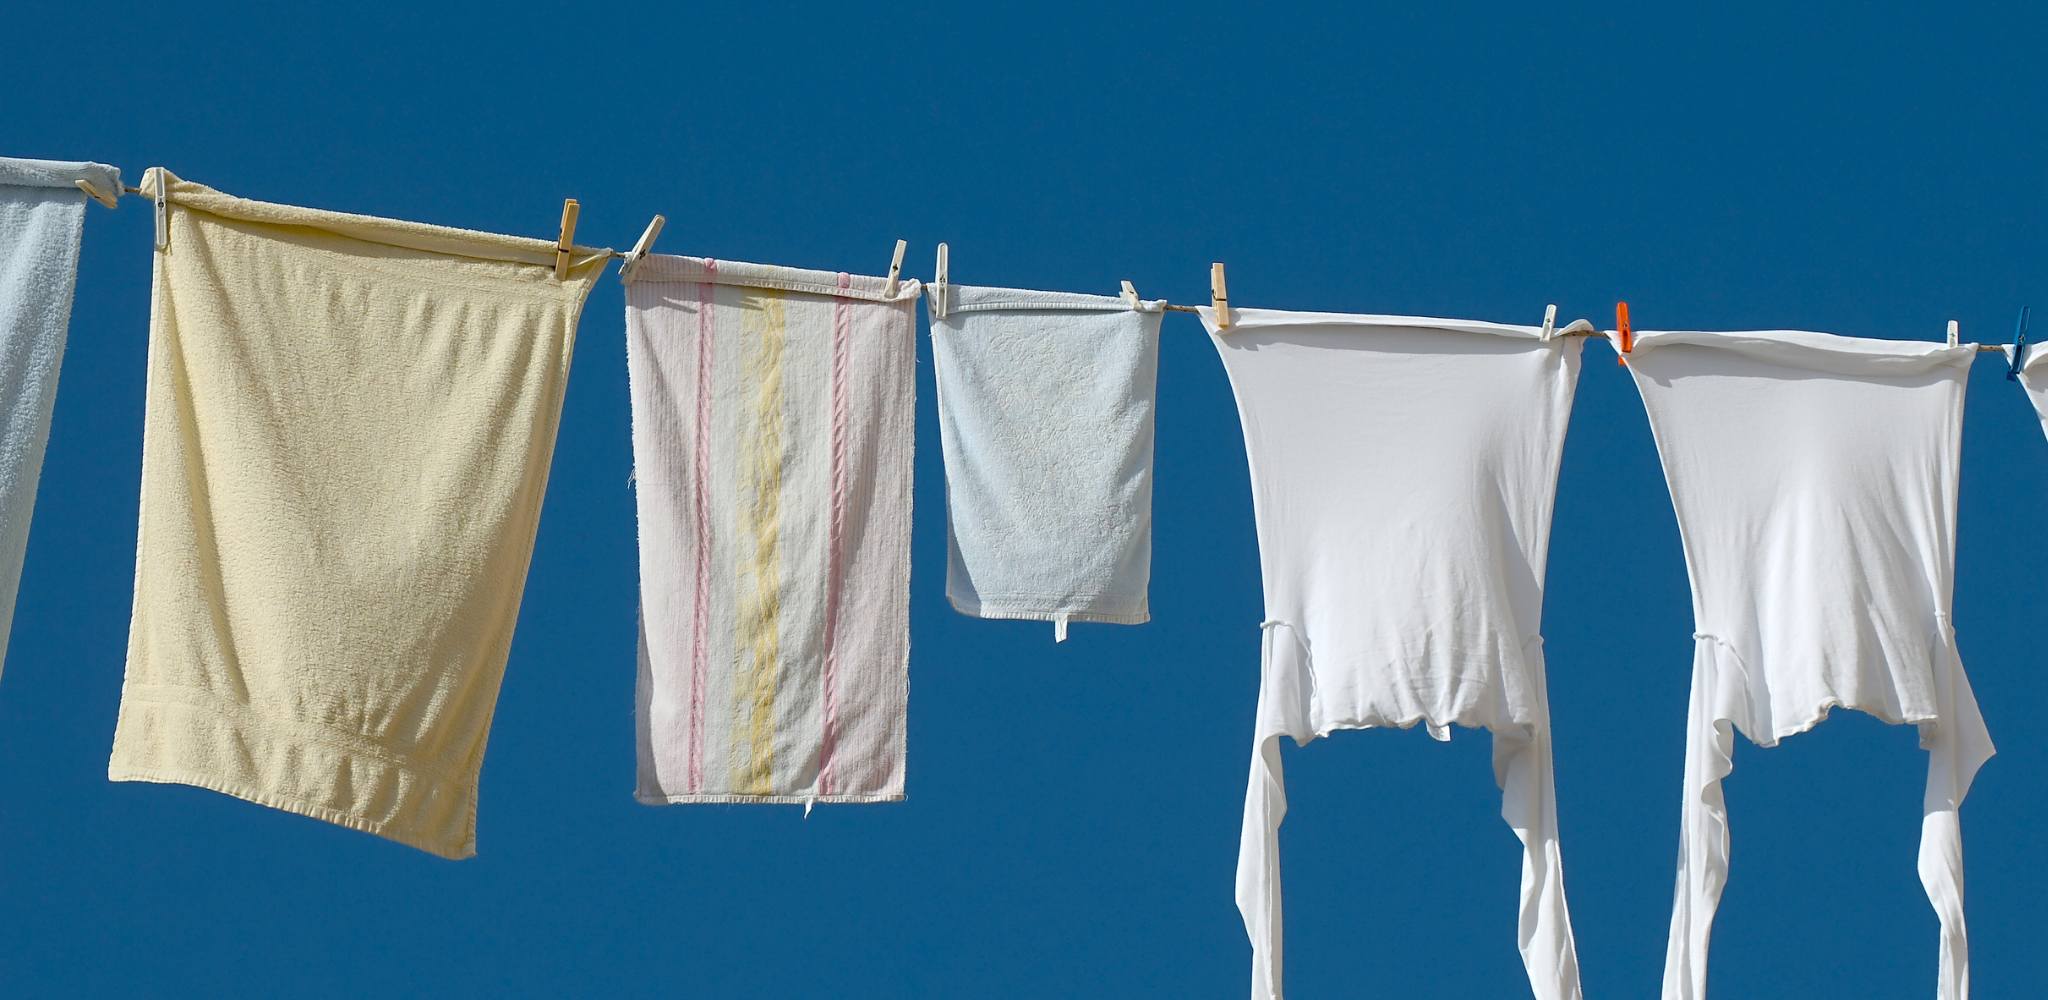 Washing hanging outdoors